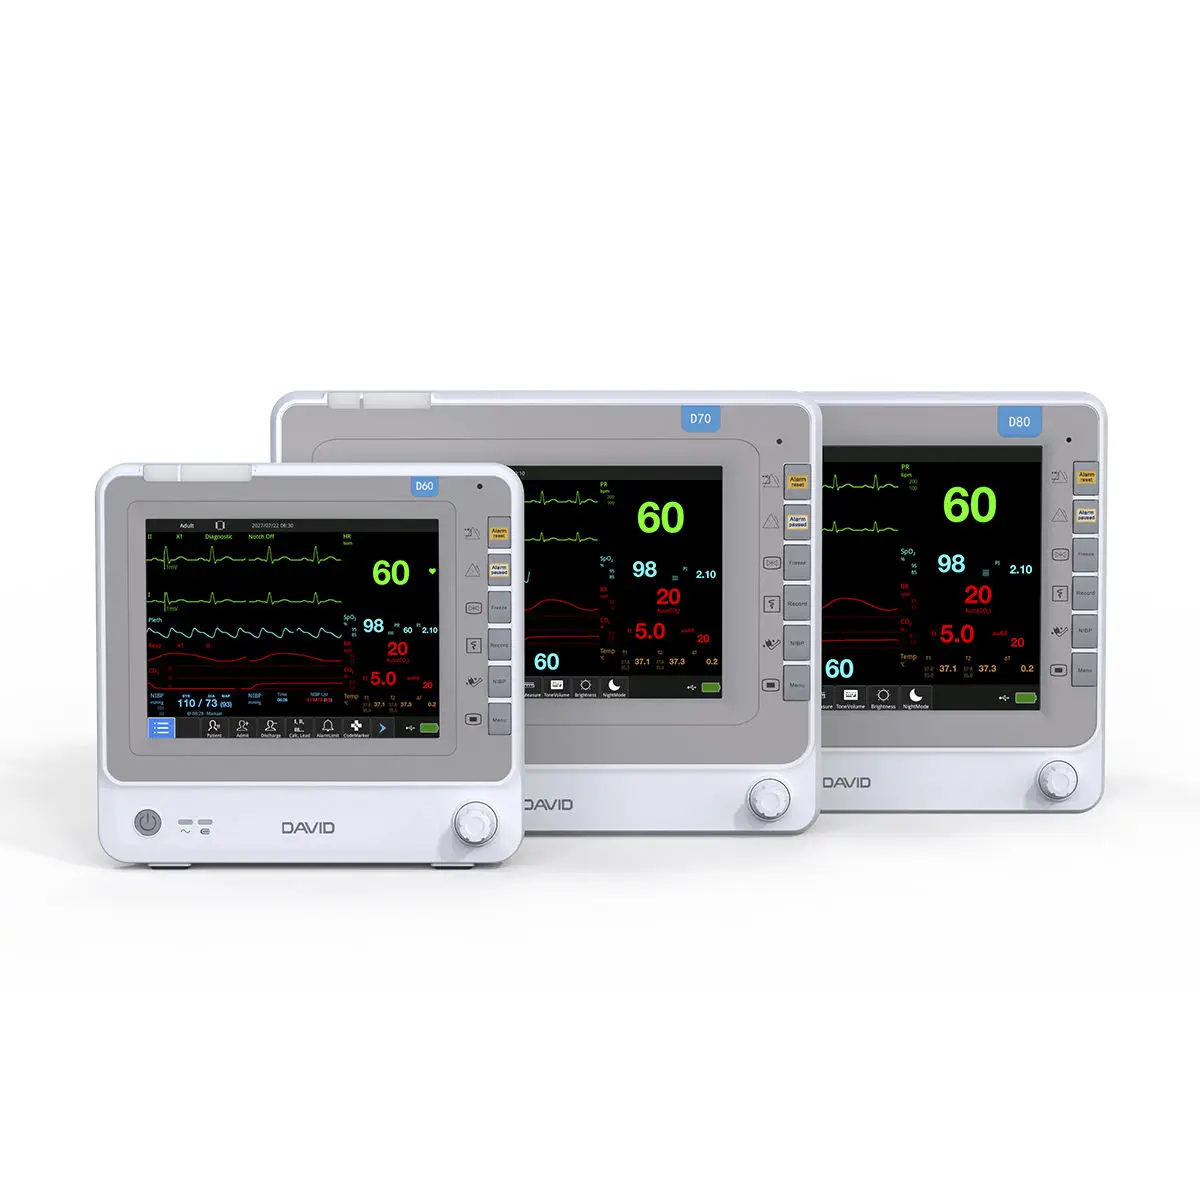 เครื่องติดตามการทำงานของหัวใจและสัญญาณชีพอัตโนมัติ  Compact patient monitor D60/D70/D80  David